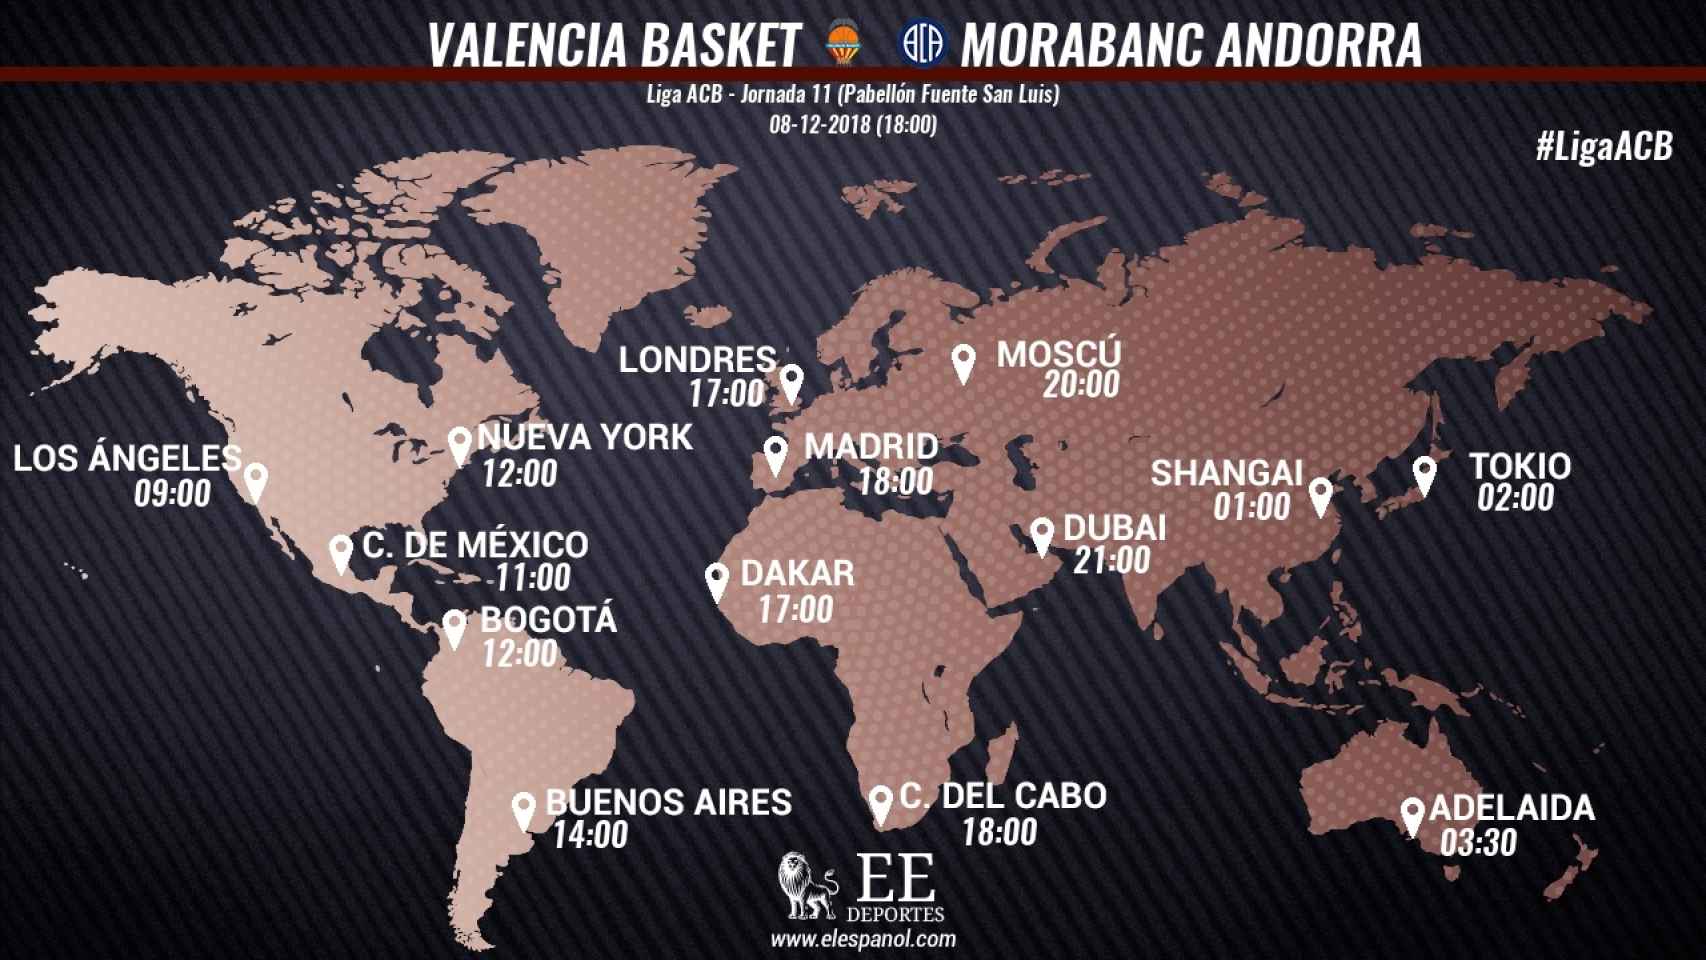 Horario del Valencia Basket - MoraBanc Andorra